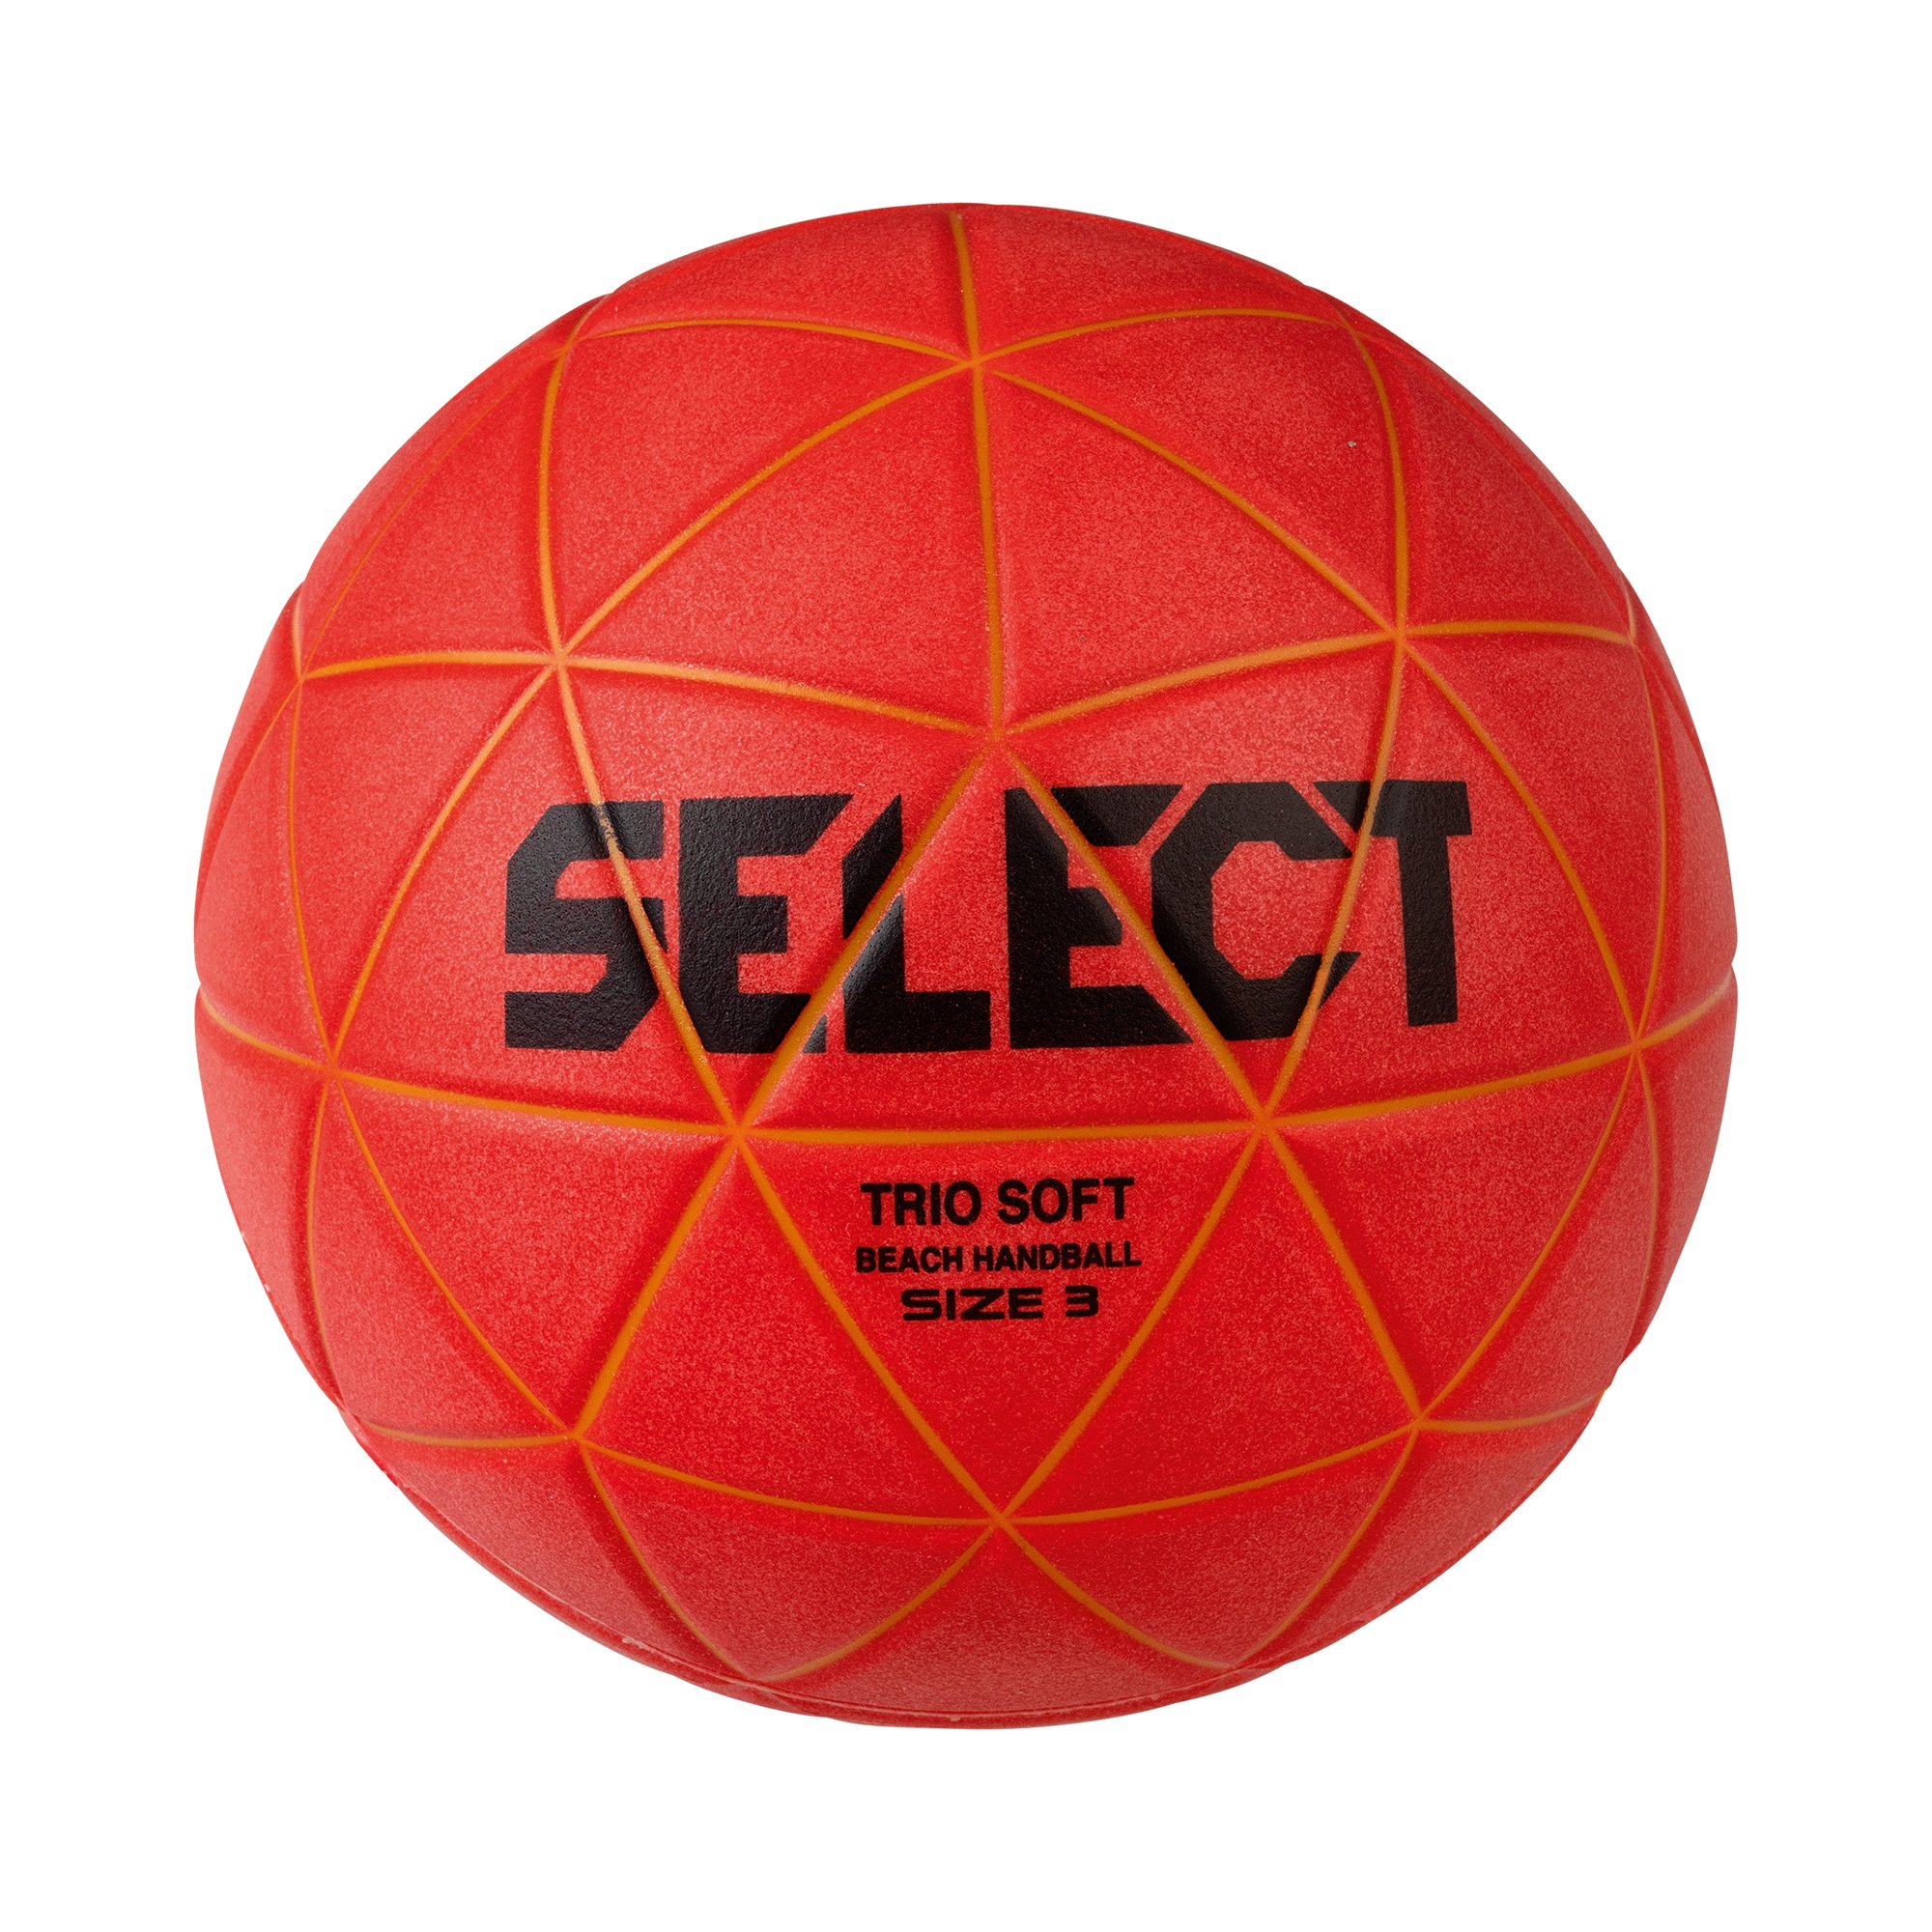 Select Trio Soft Beach Handball